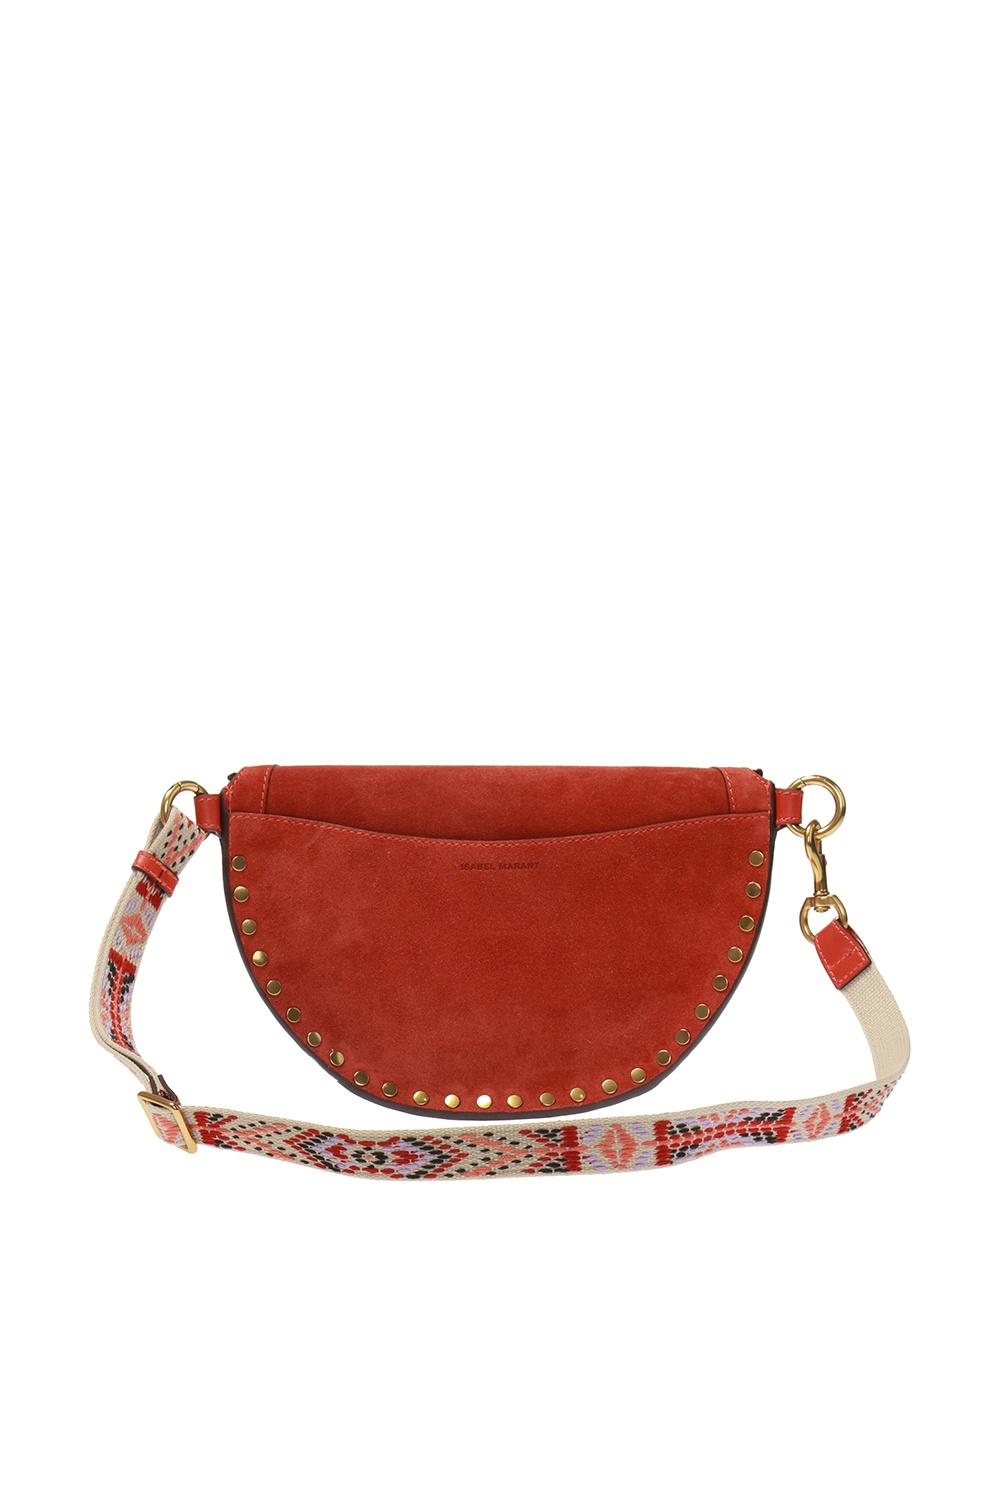 Isabel Marant Women's Skano Leather Belt Bag - Red - Belt Bags